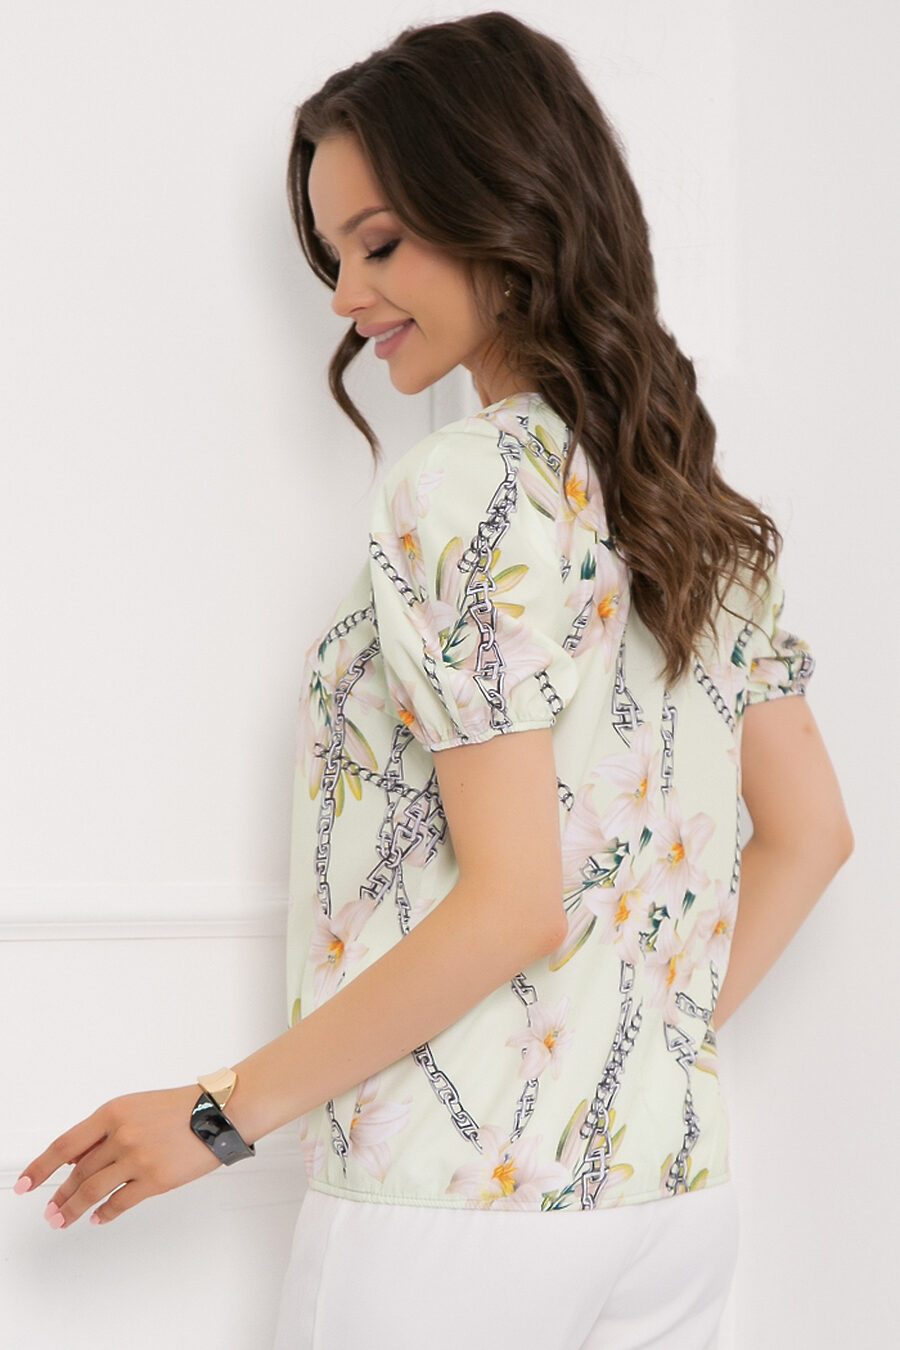 Блуза BELLOVERA (775282), купить в Moyo.moda